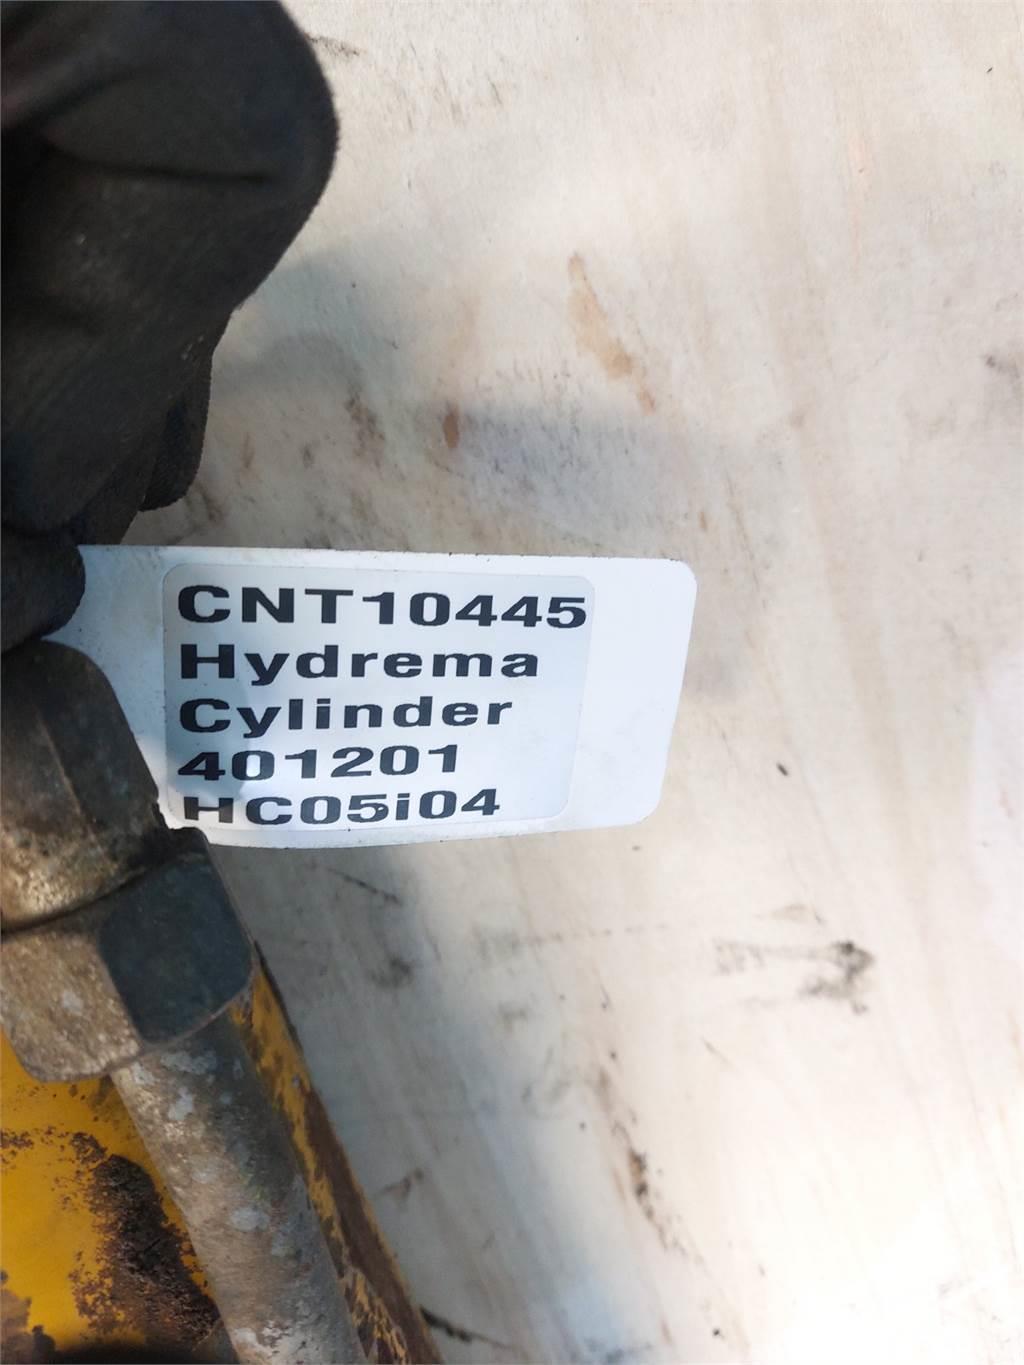 Hydrema 906C Bommar och stickor